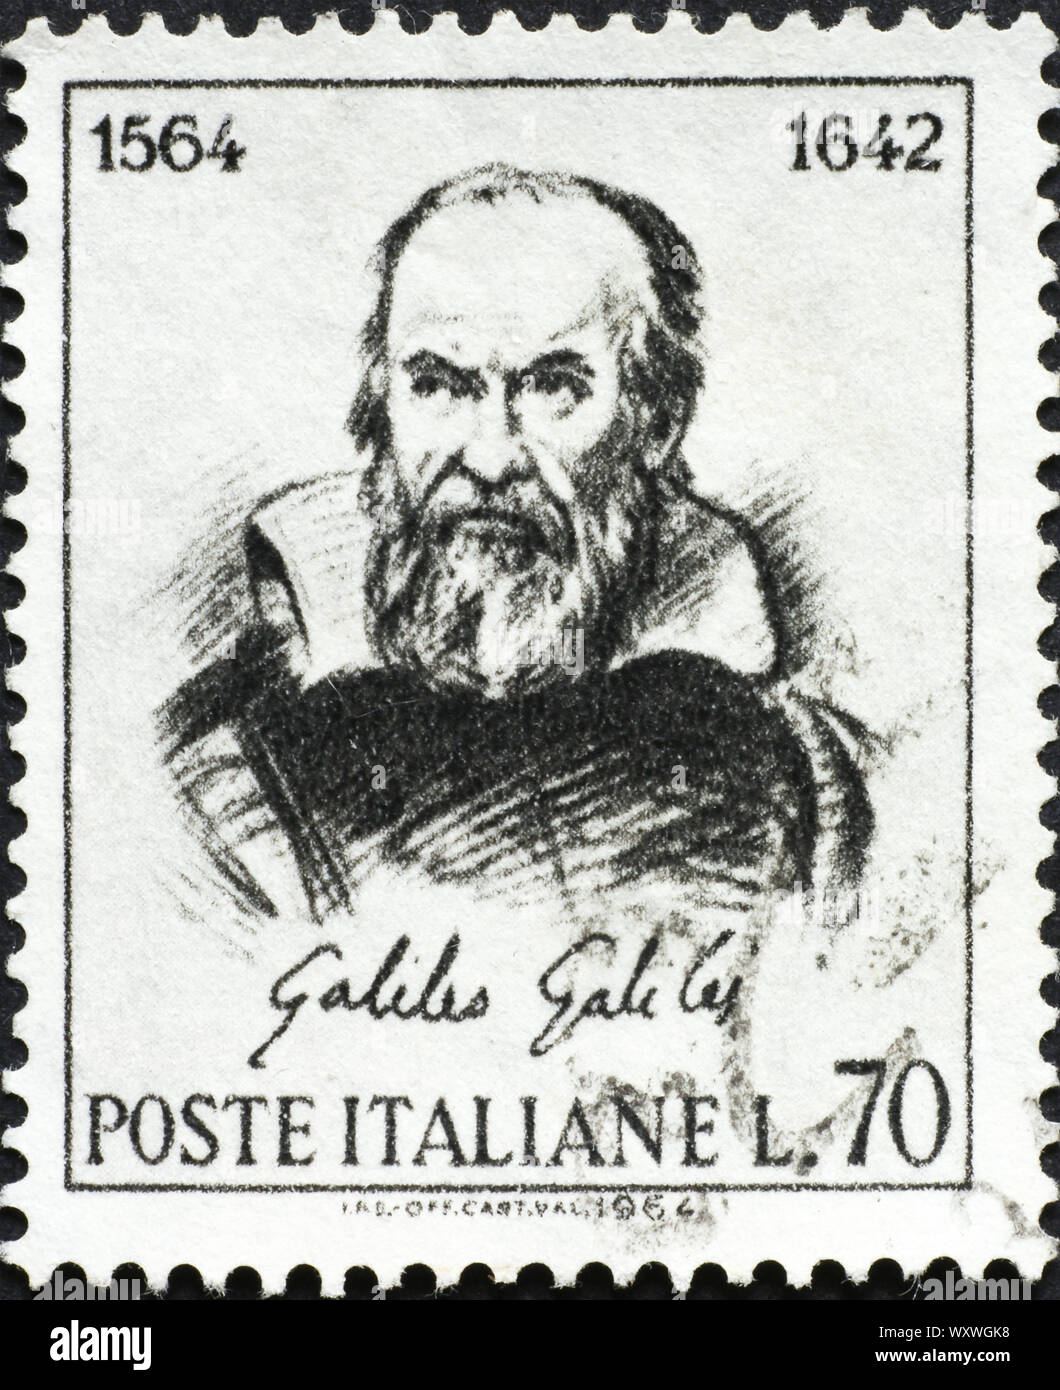 Galileo Galilei auf alten italienischen Briefmarke Stockfoto